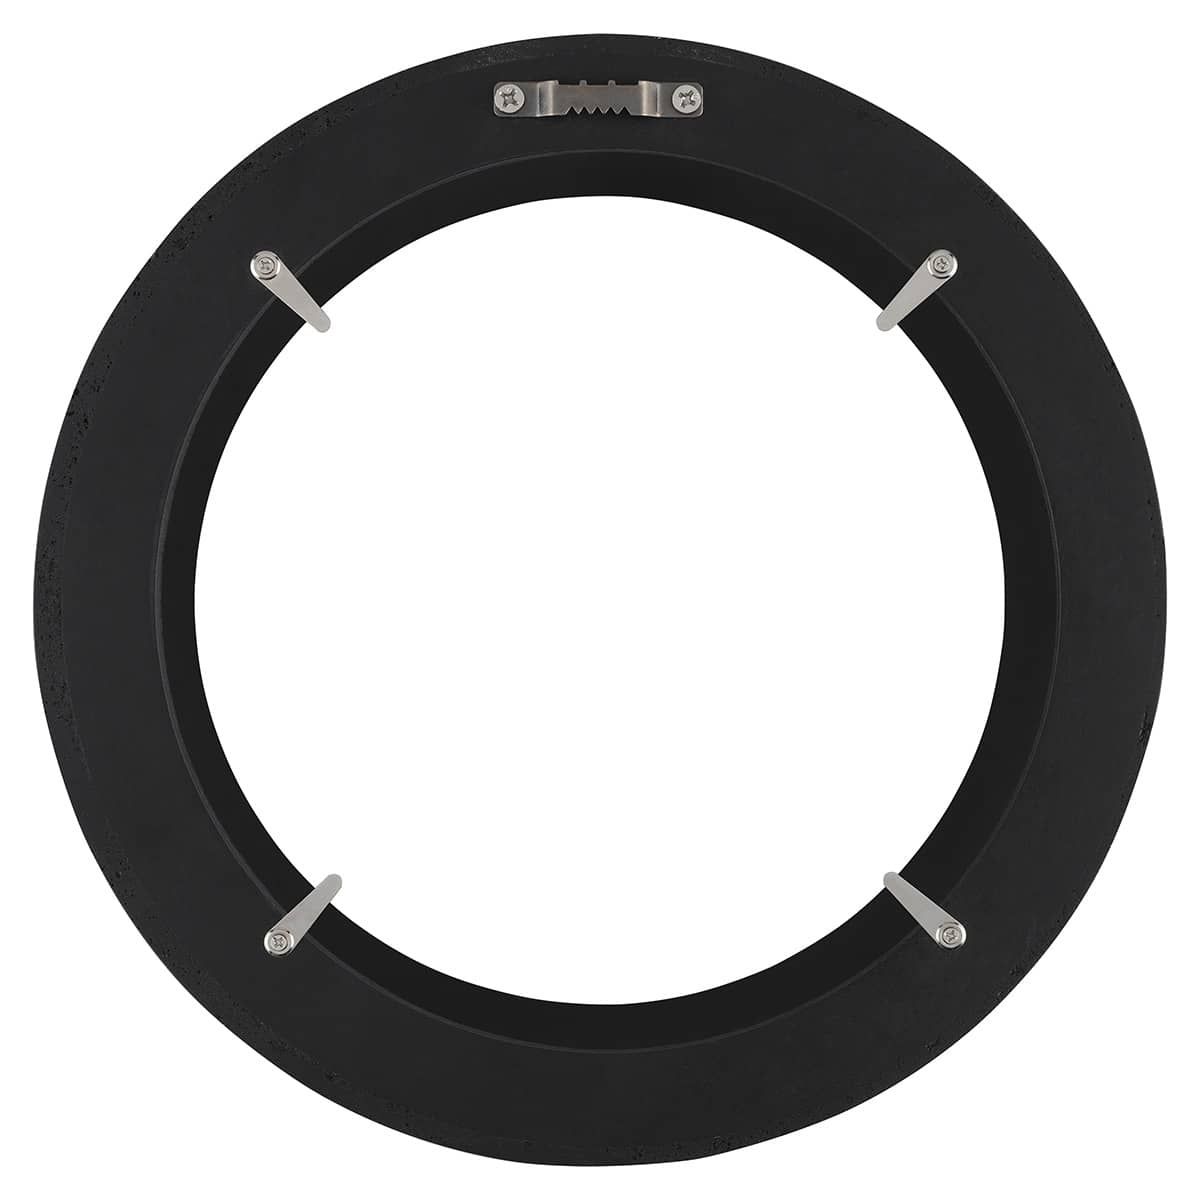 Ambiance Round Frame - Black, 16" Diameter